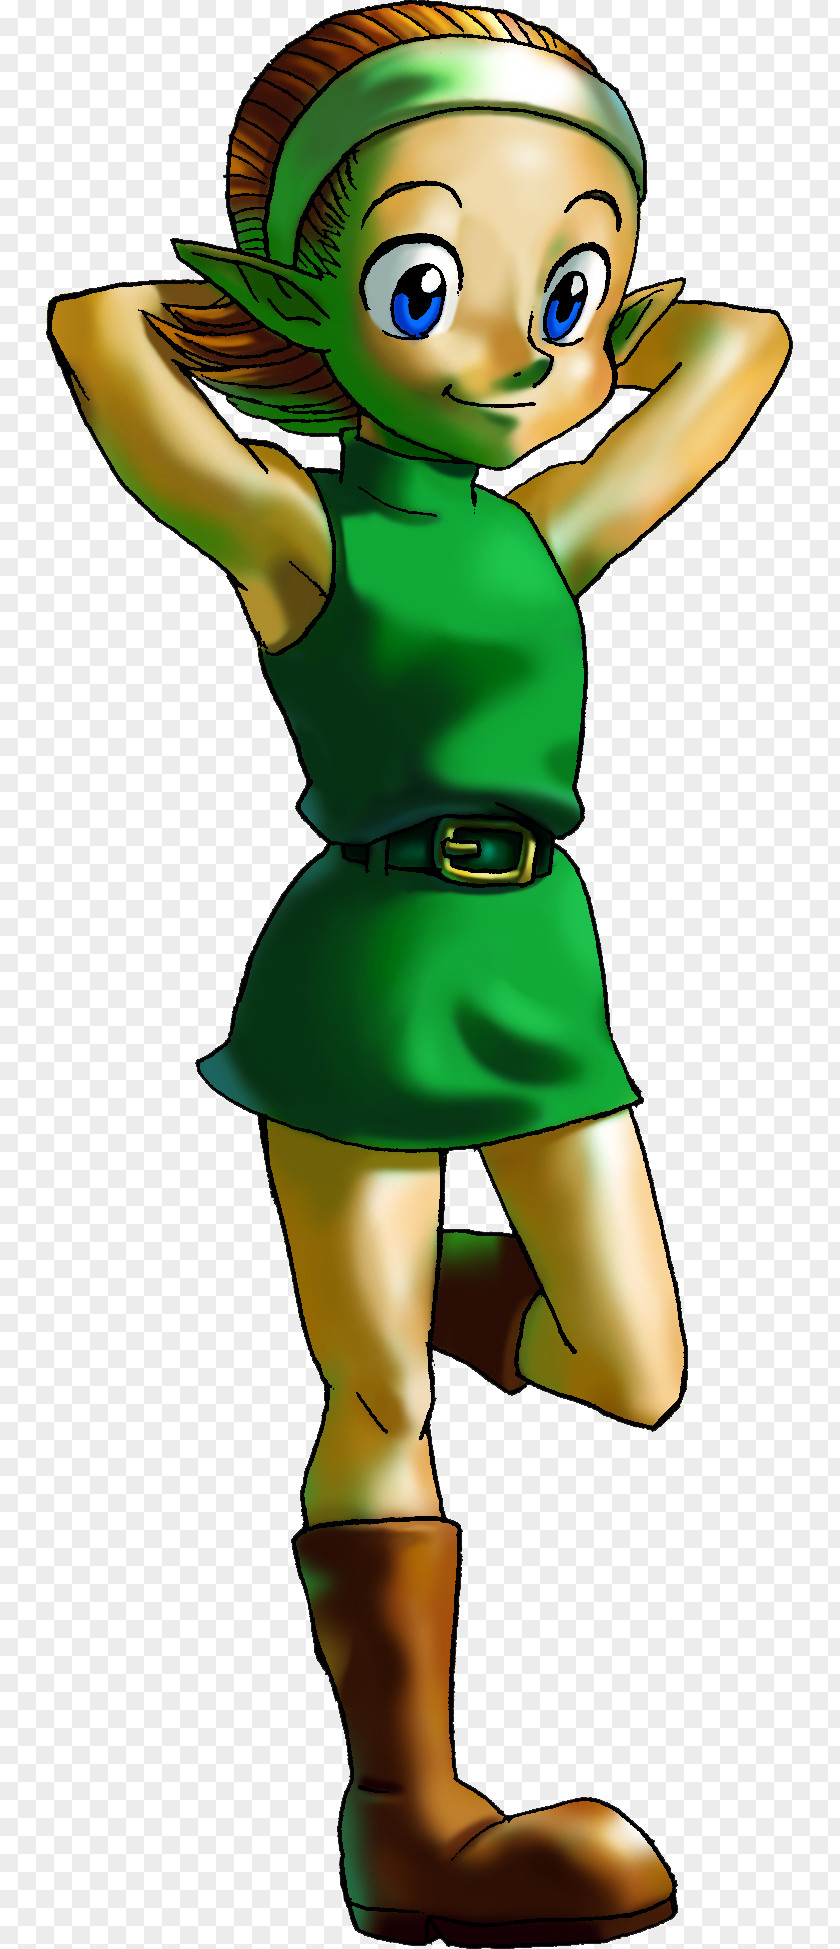 Zelda The Legend Of Zelda: Ocarina Time 3D Princess Wind Waker Link PNG